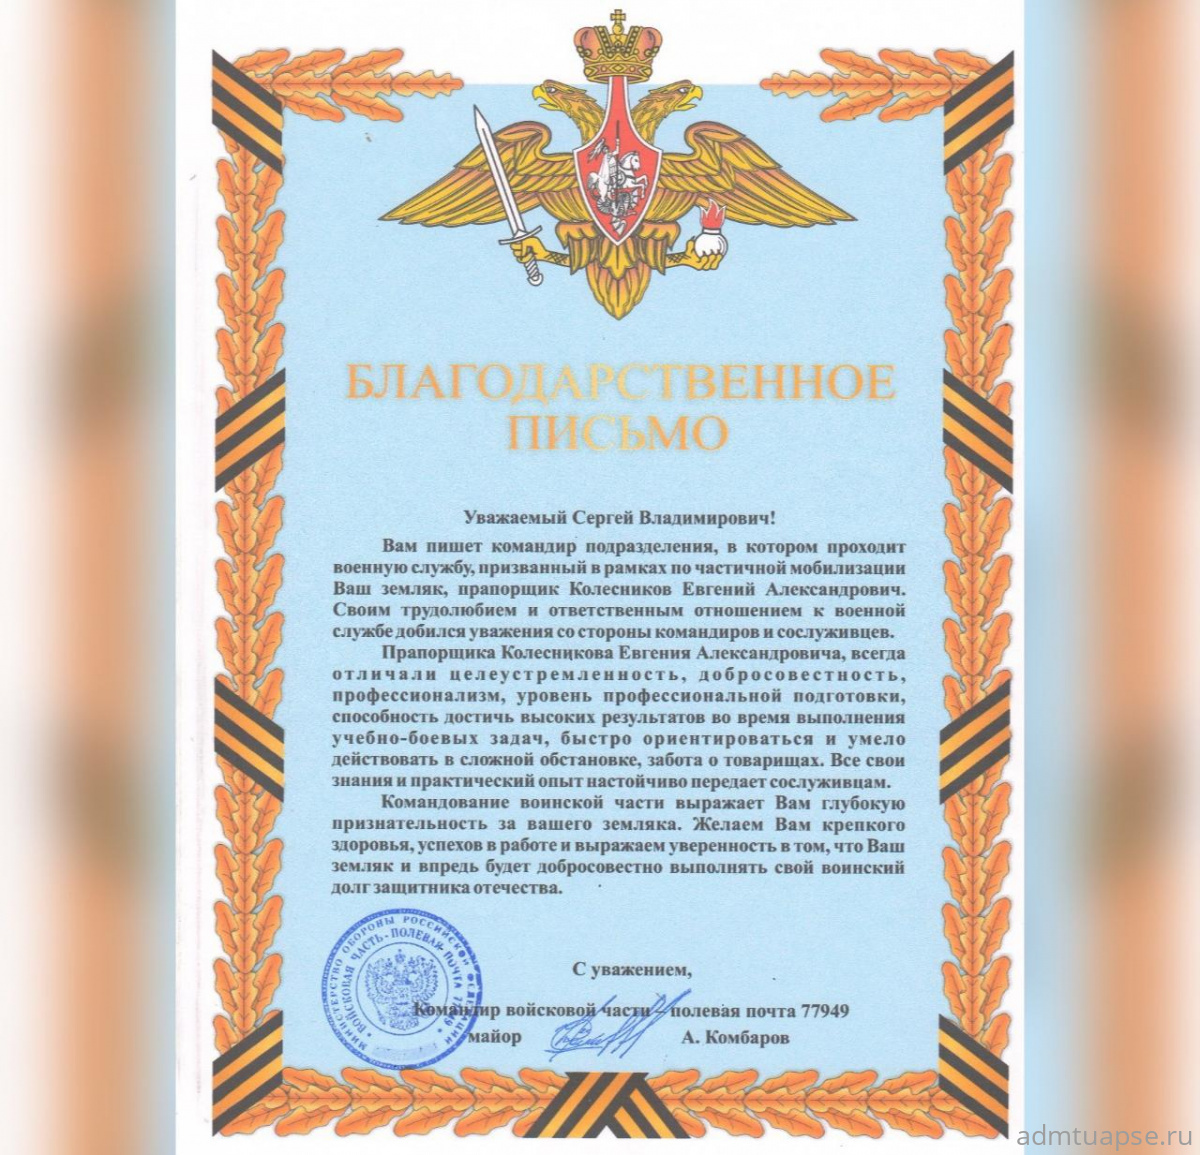 Благодарность за земляка-участника СВО получил глава города Туапсе Сергей Бондаренко